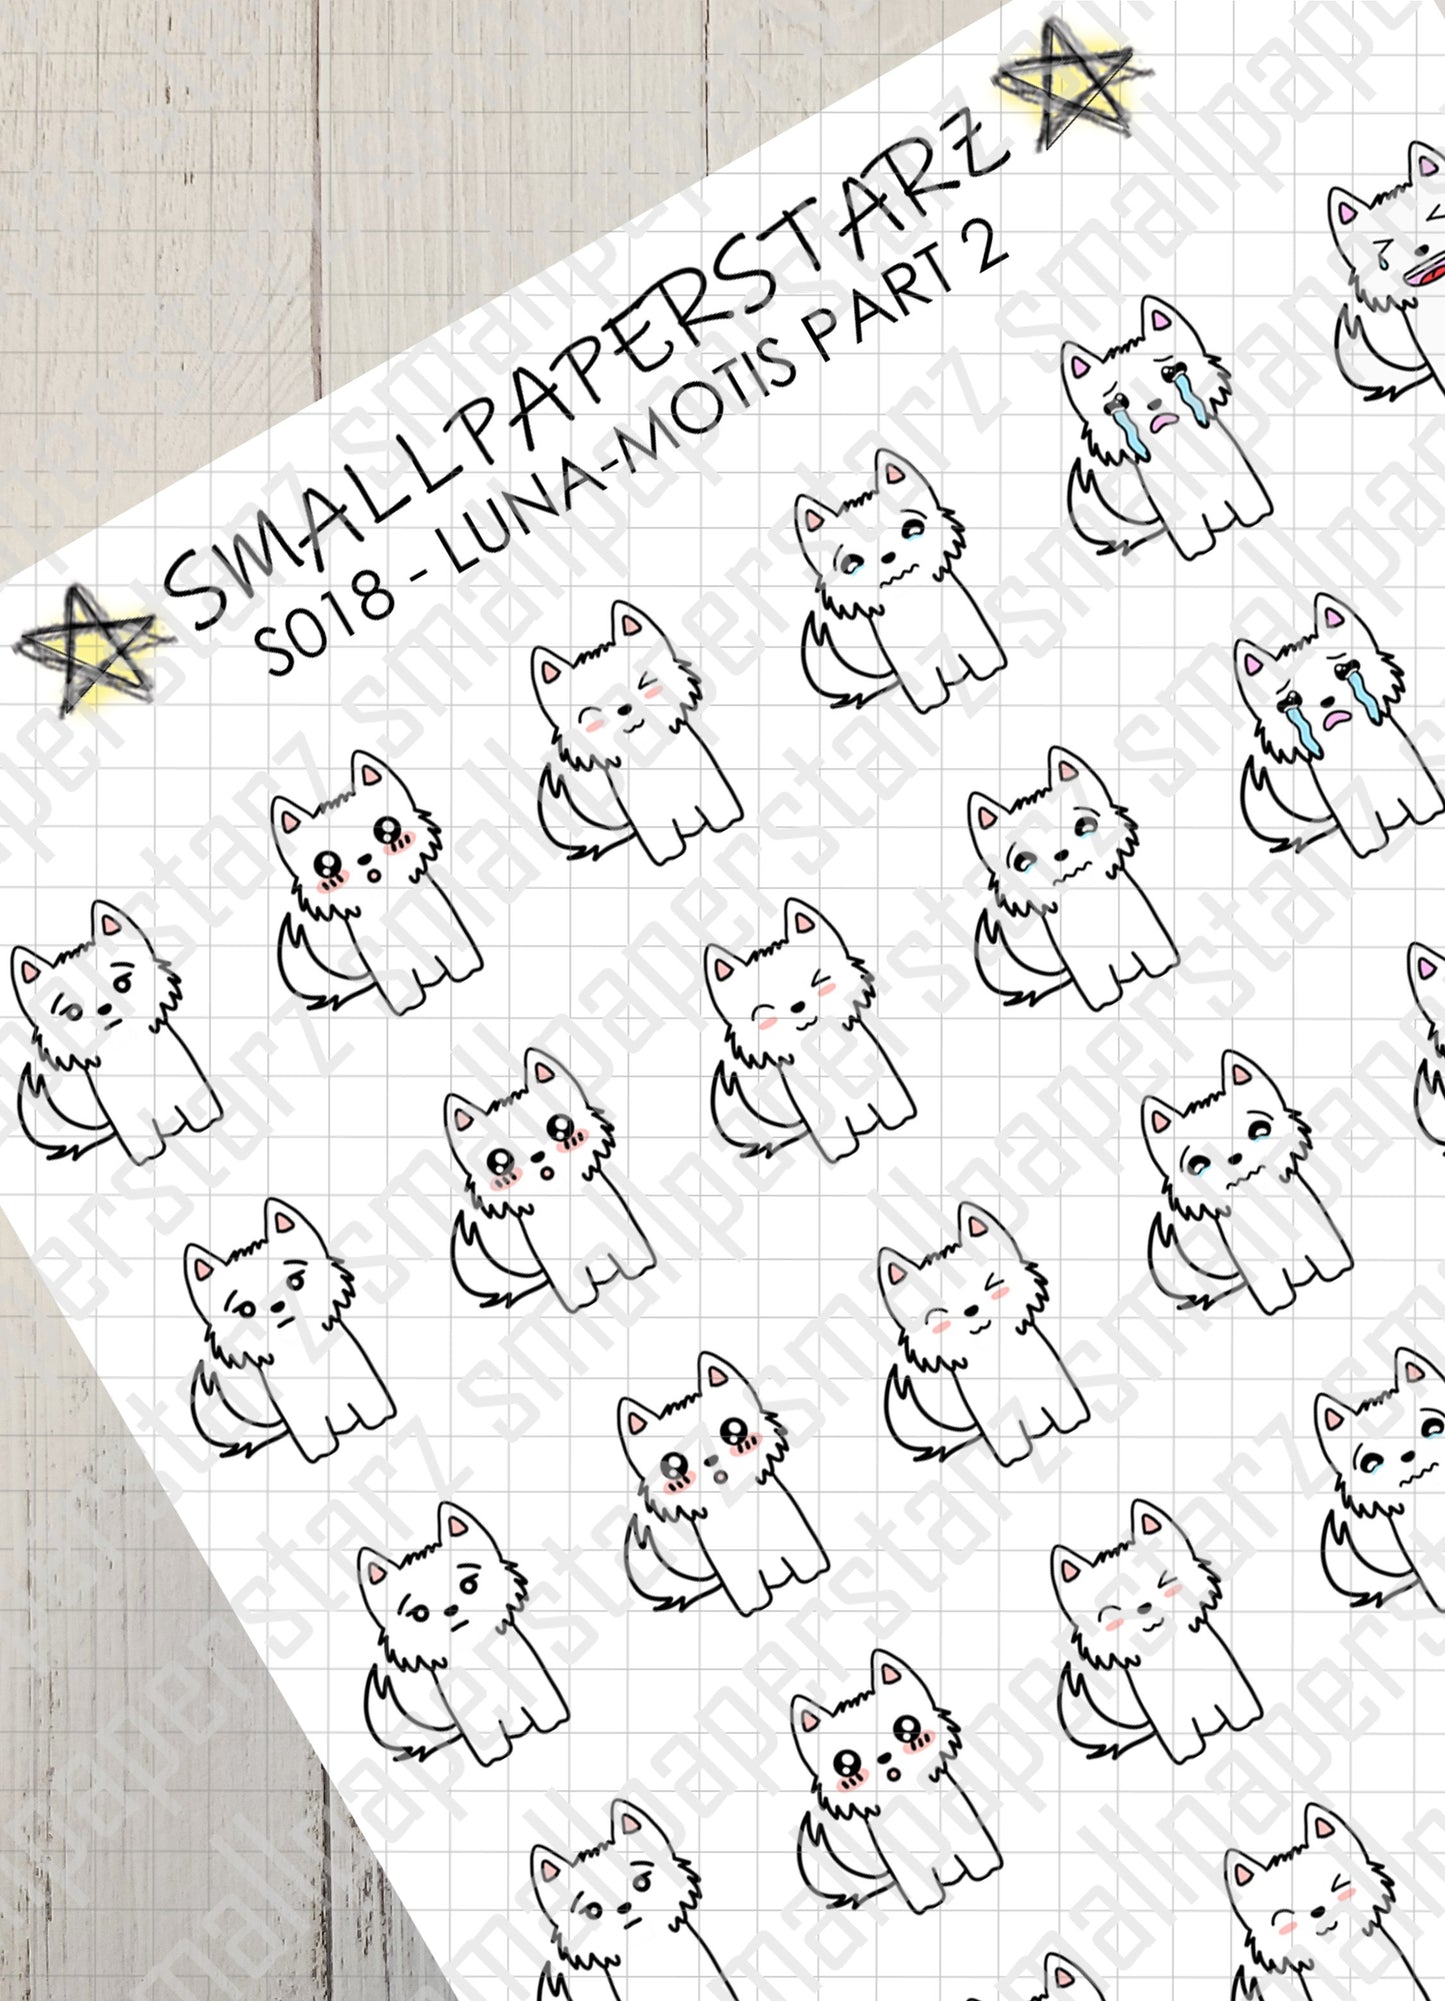 S018 - Luna-motis Part 2 Sticker Sheet